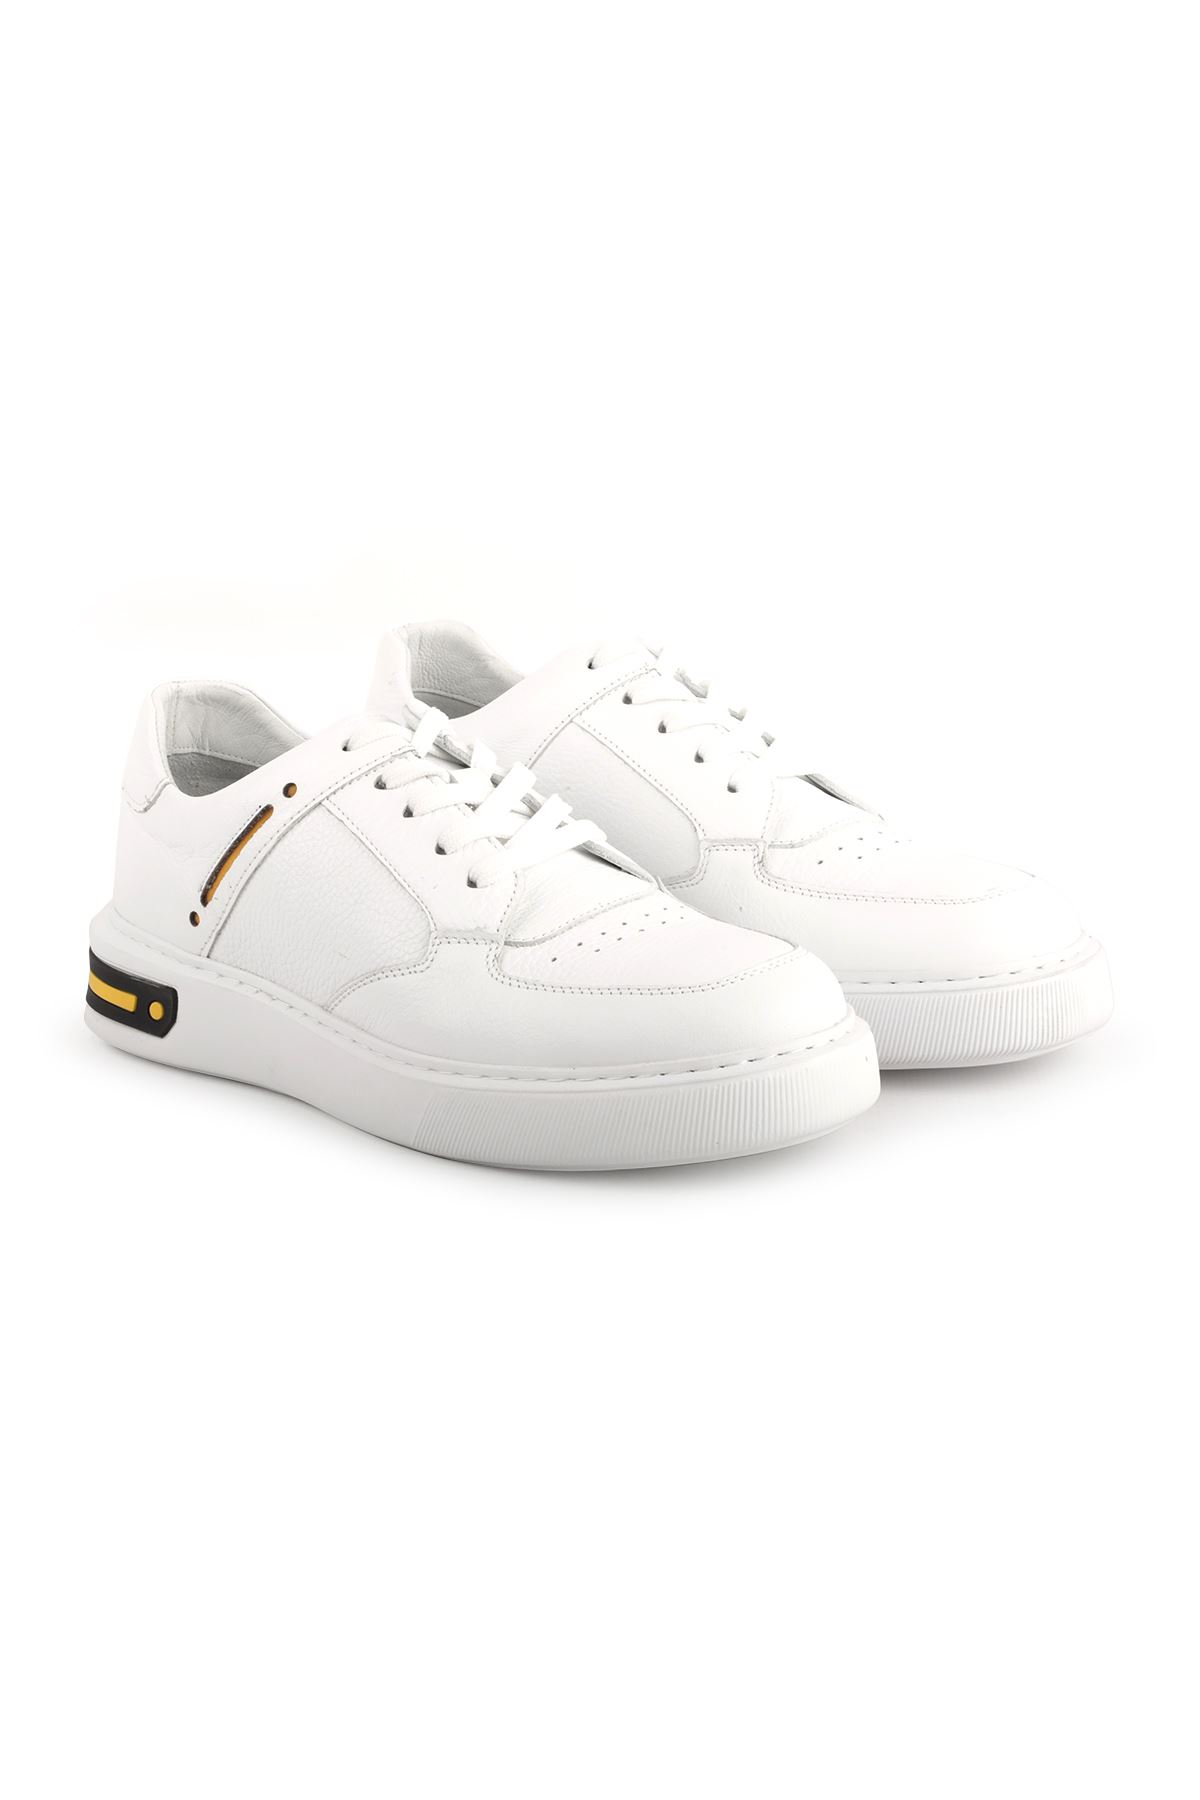 Libero L3802 Casual Beyaz-Sarı Erkek Ayakkabı